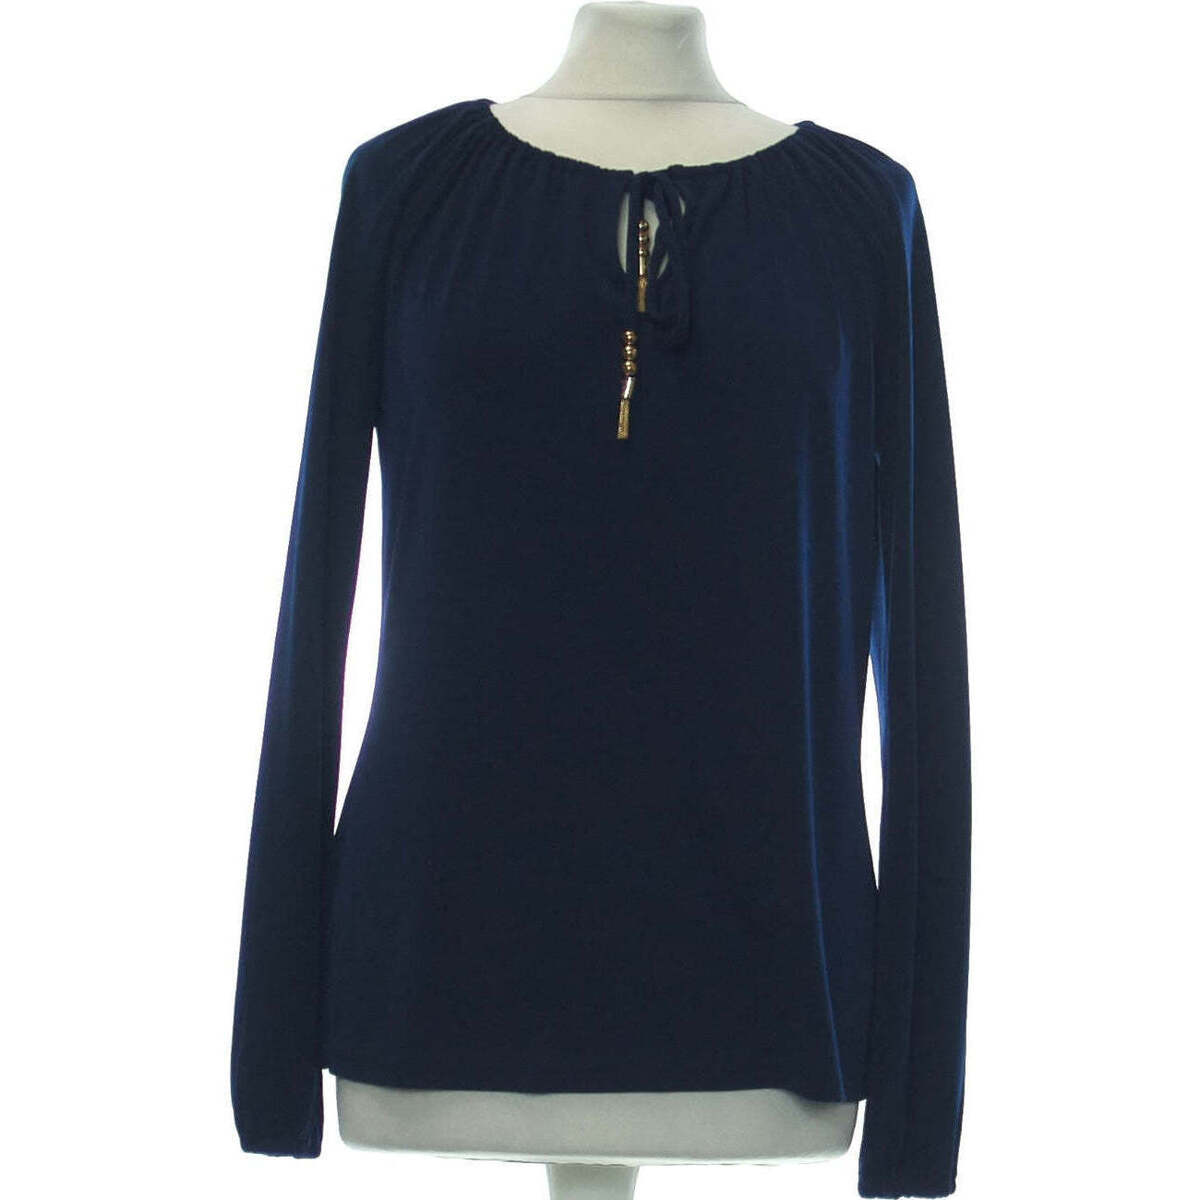 Vêtements Femme Tops / Blouses se mesure horizontalement à lendroit le plus fort blouse  36 - T1 - S Bleu Bleu